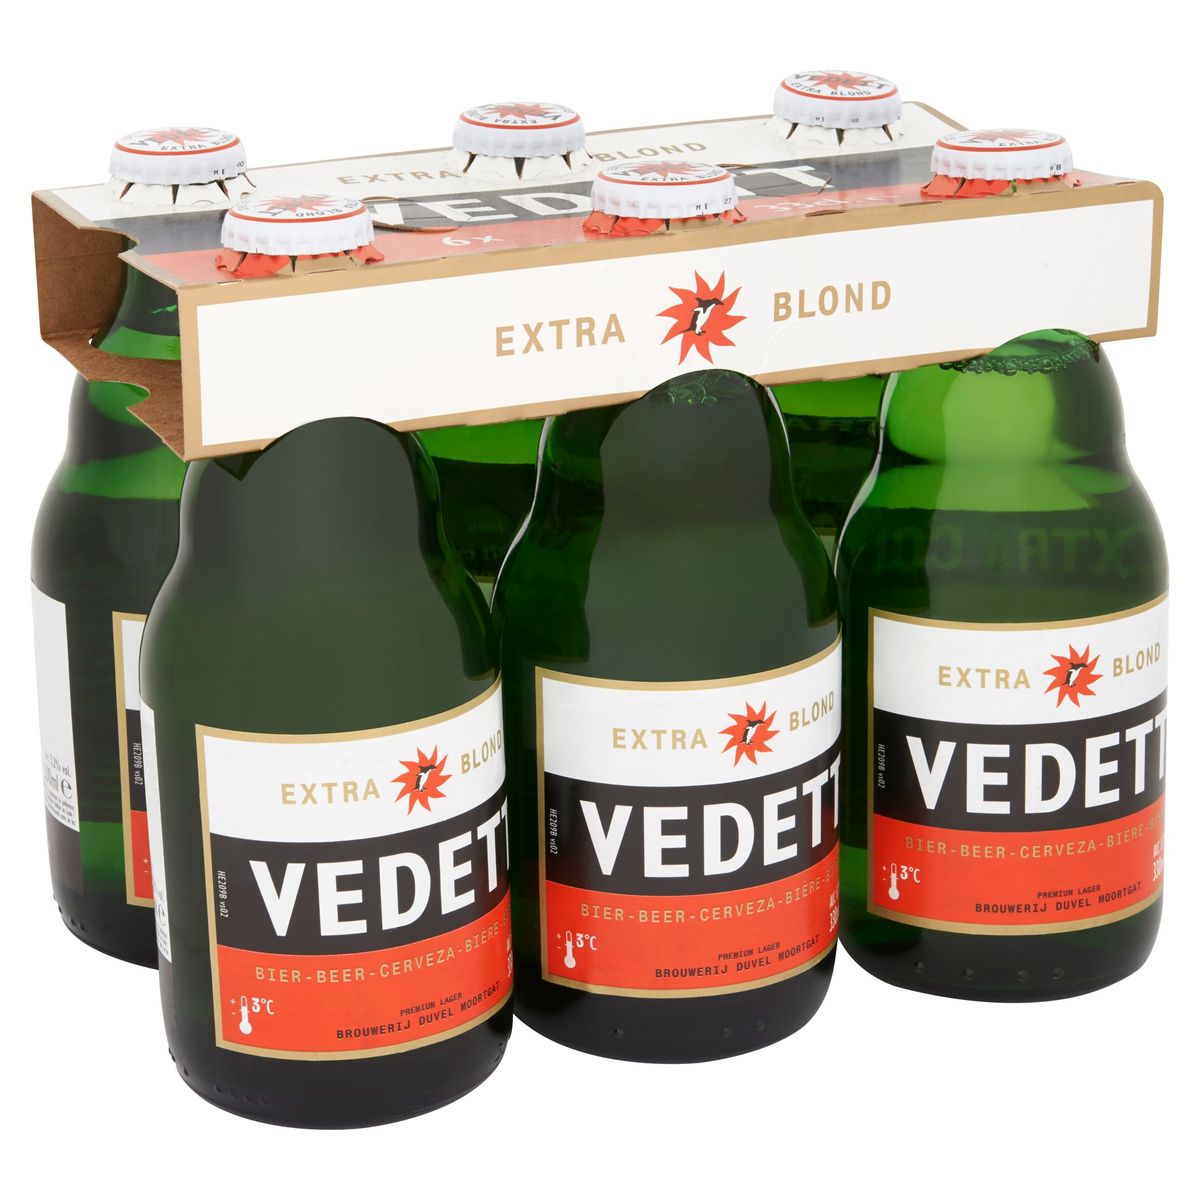 Vedett Extra Blond Bière Bouteilles 6 x 33 cl